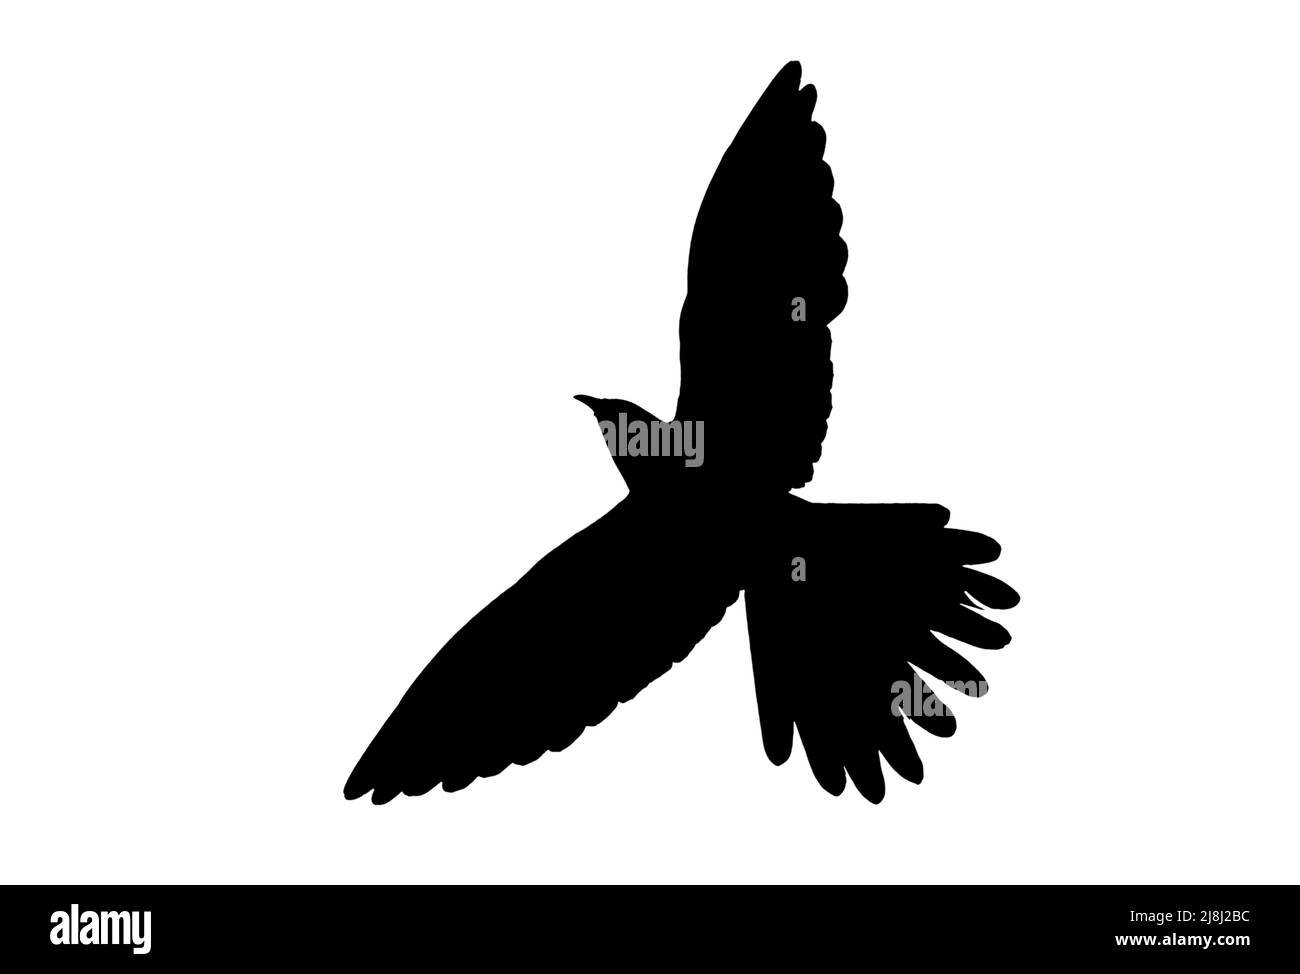 Silueta de cuco común (Cuculus canorus) en vuelo contorneado sobre fondo blanco para mostrar alas, cabeza y cola formas Foto de stock